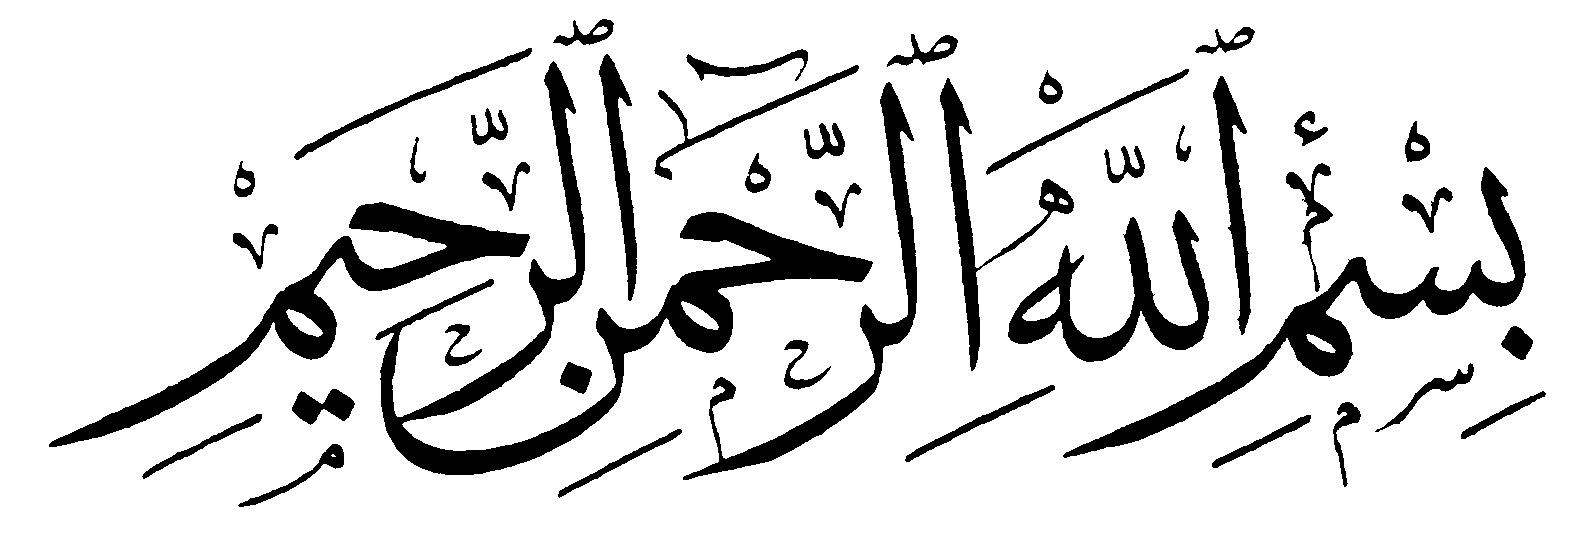 Gambar tulisan arab assalamualaikum